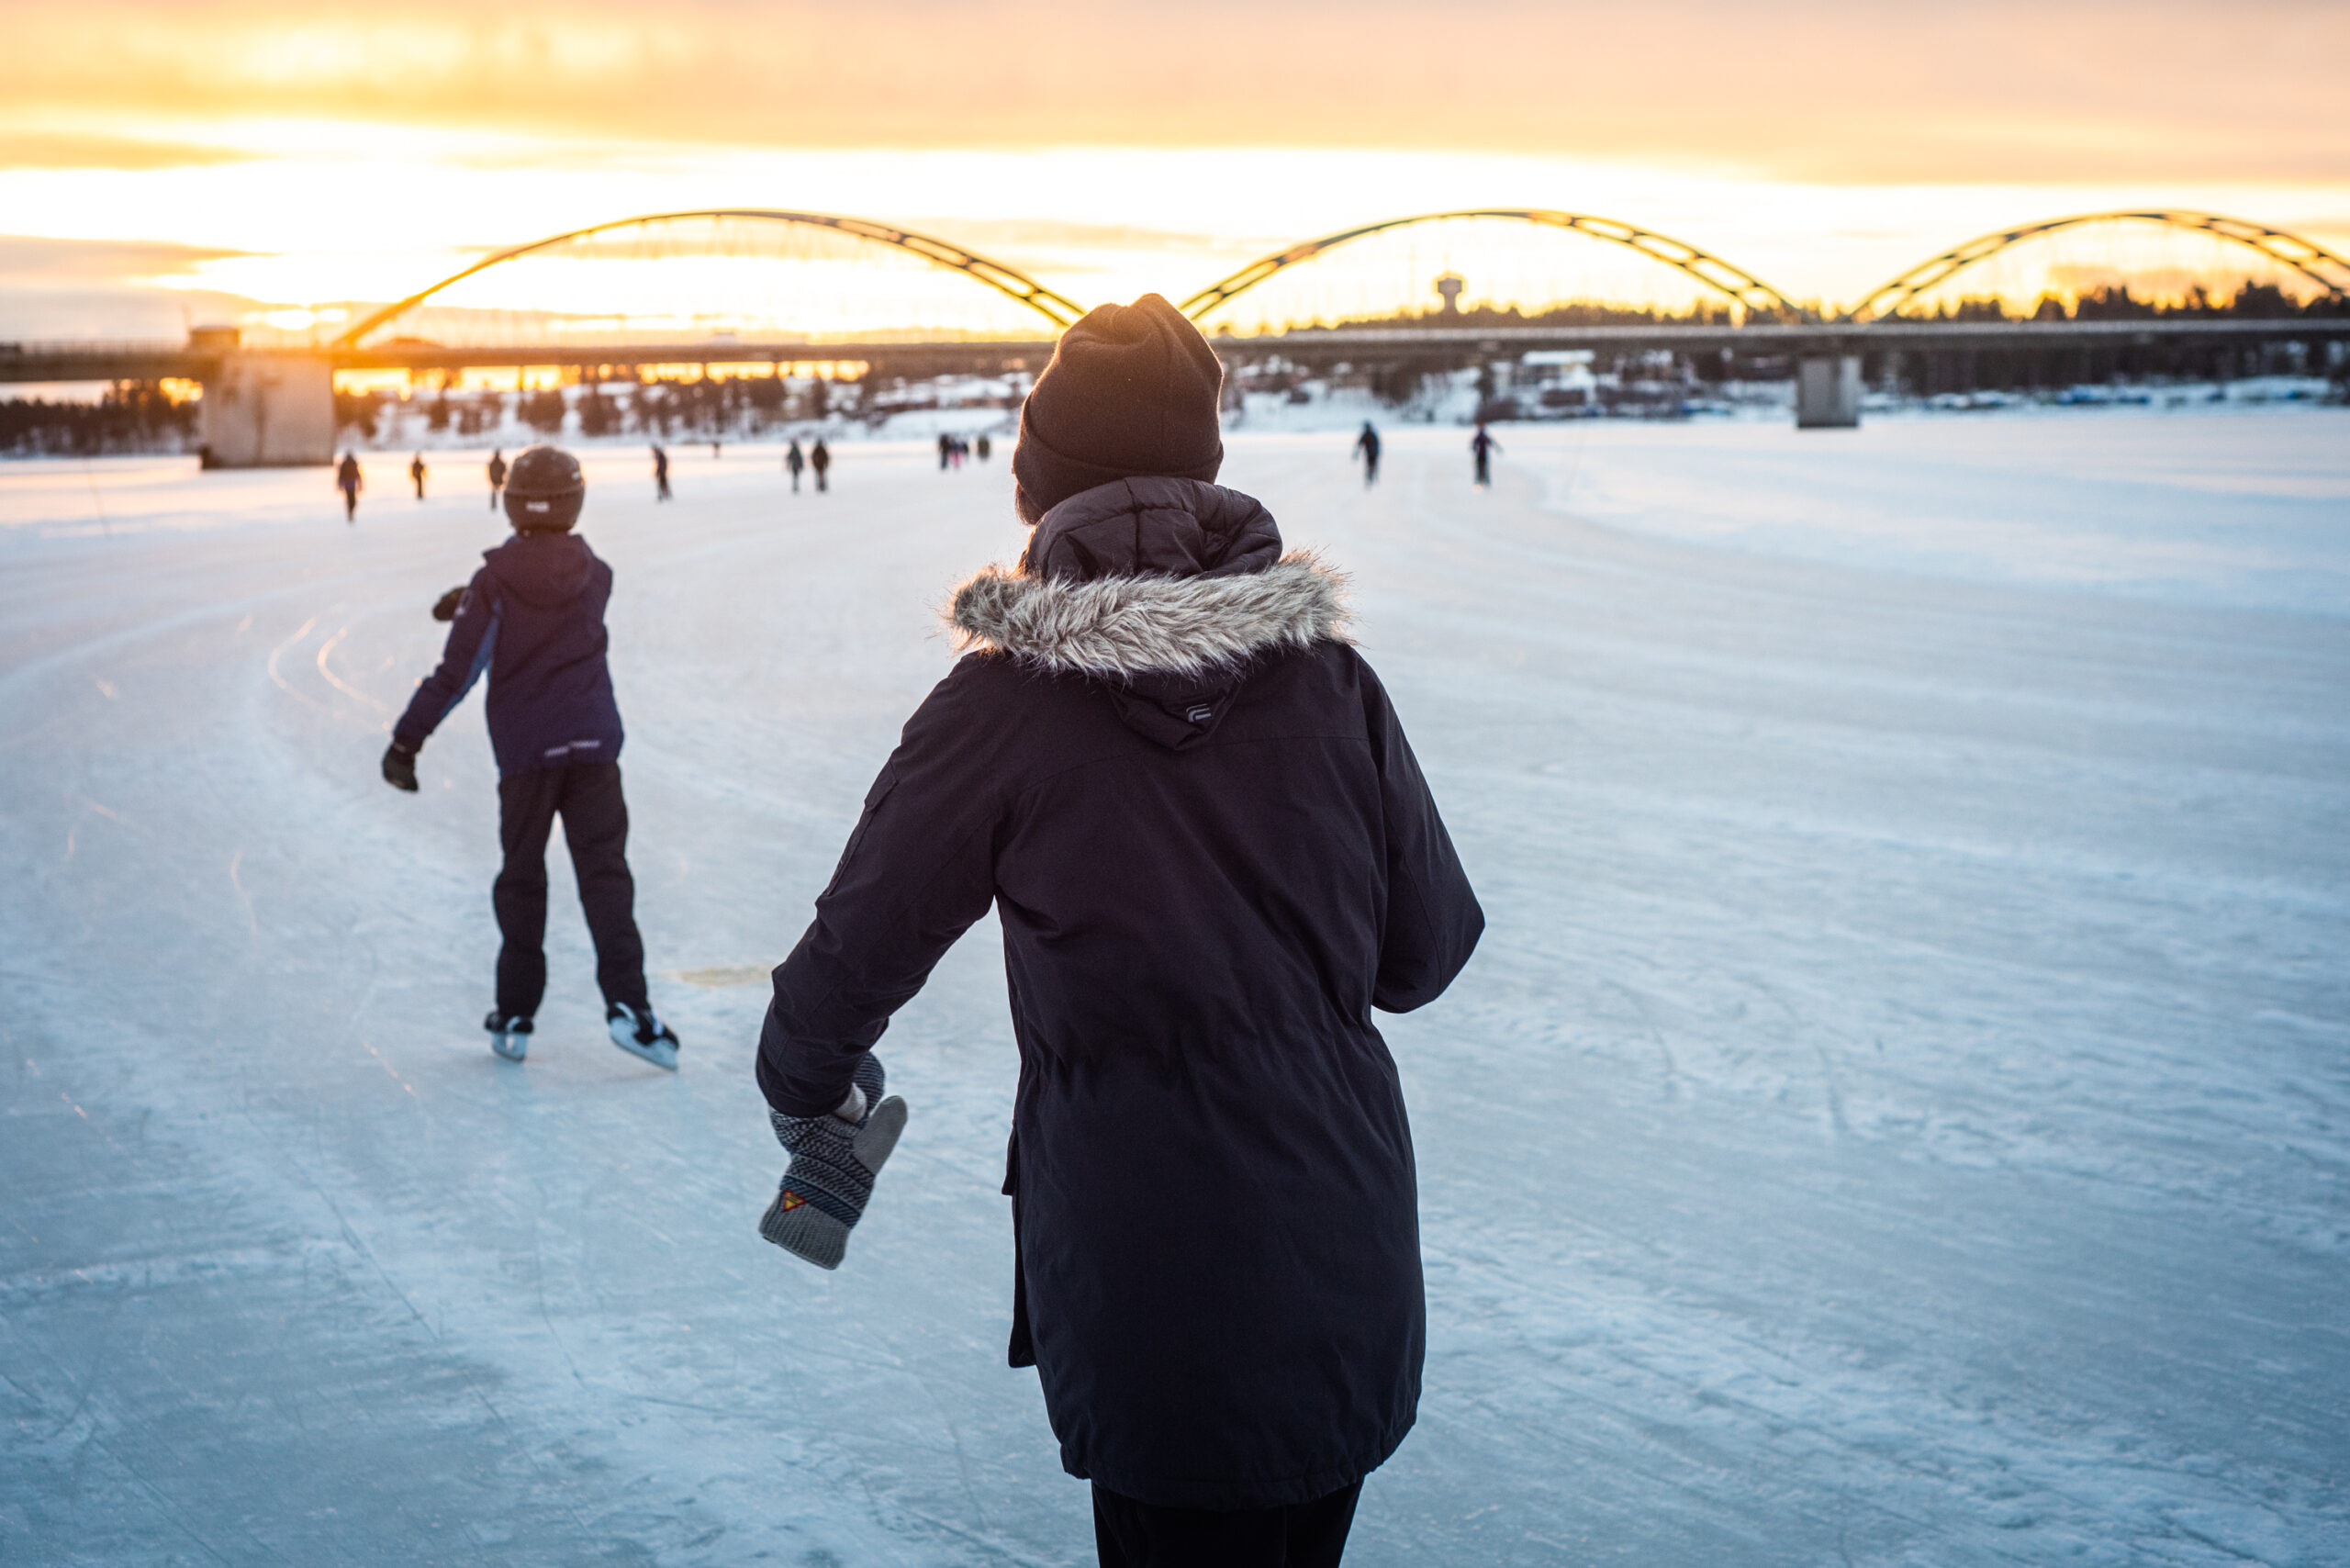 Promenad på isvägen i Luleå. Härligt ljus!